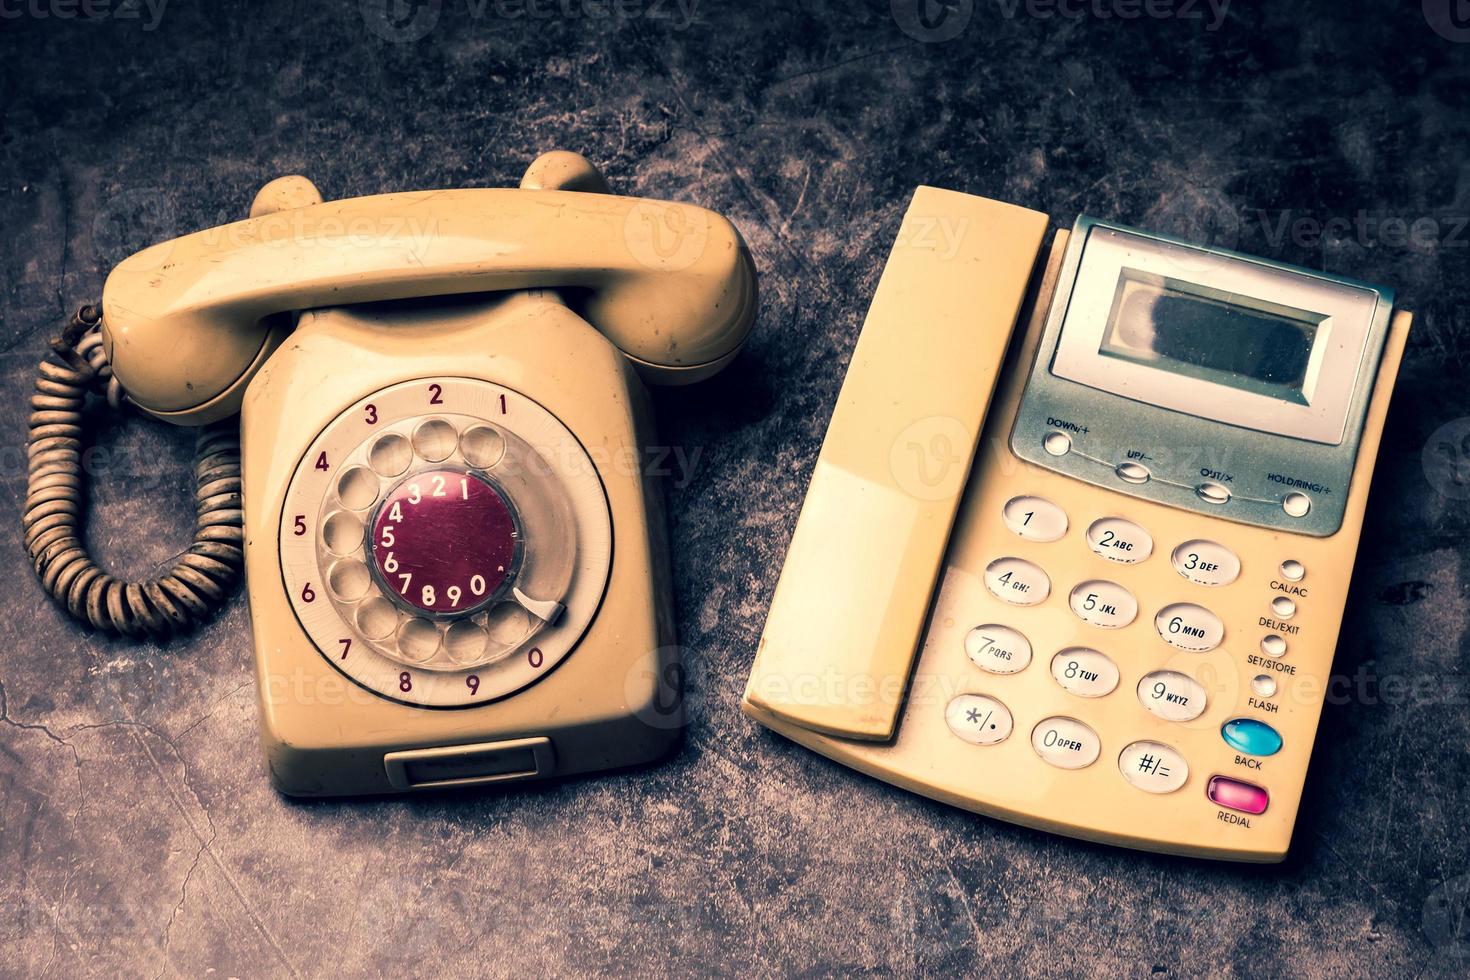 un teléfono antiguo con dial rotatorio y un teléfono fijo sobre un fondo grunge. foto